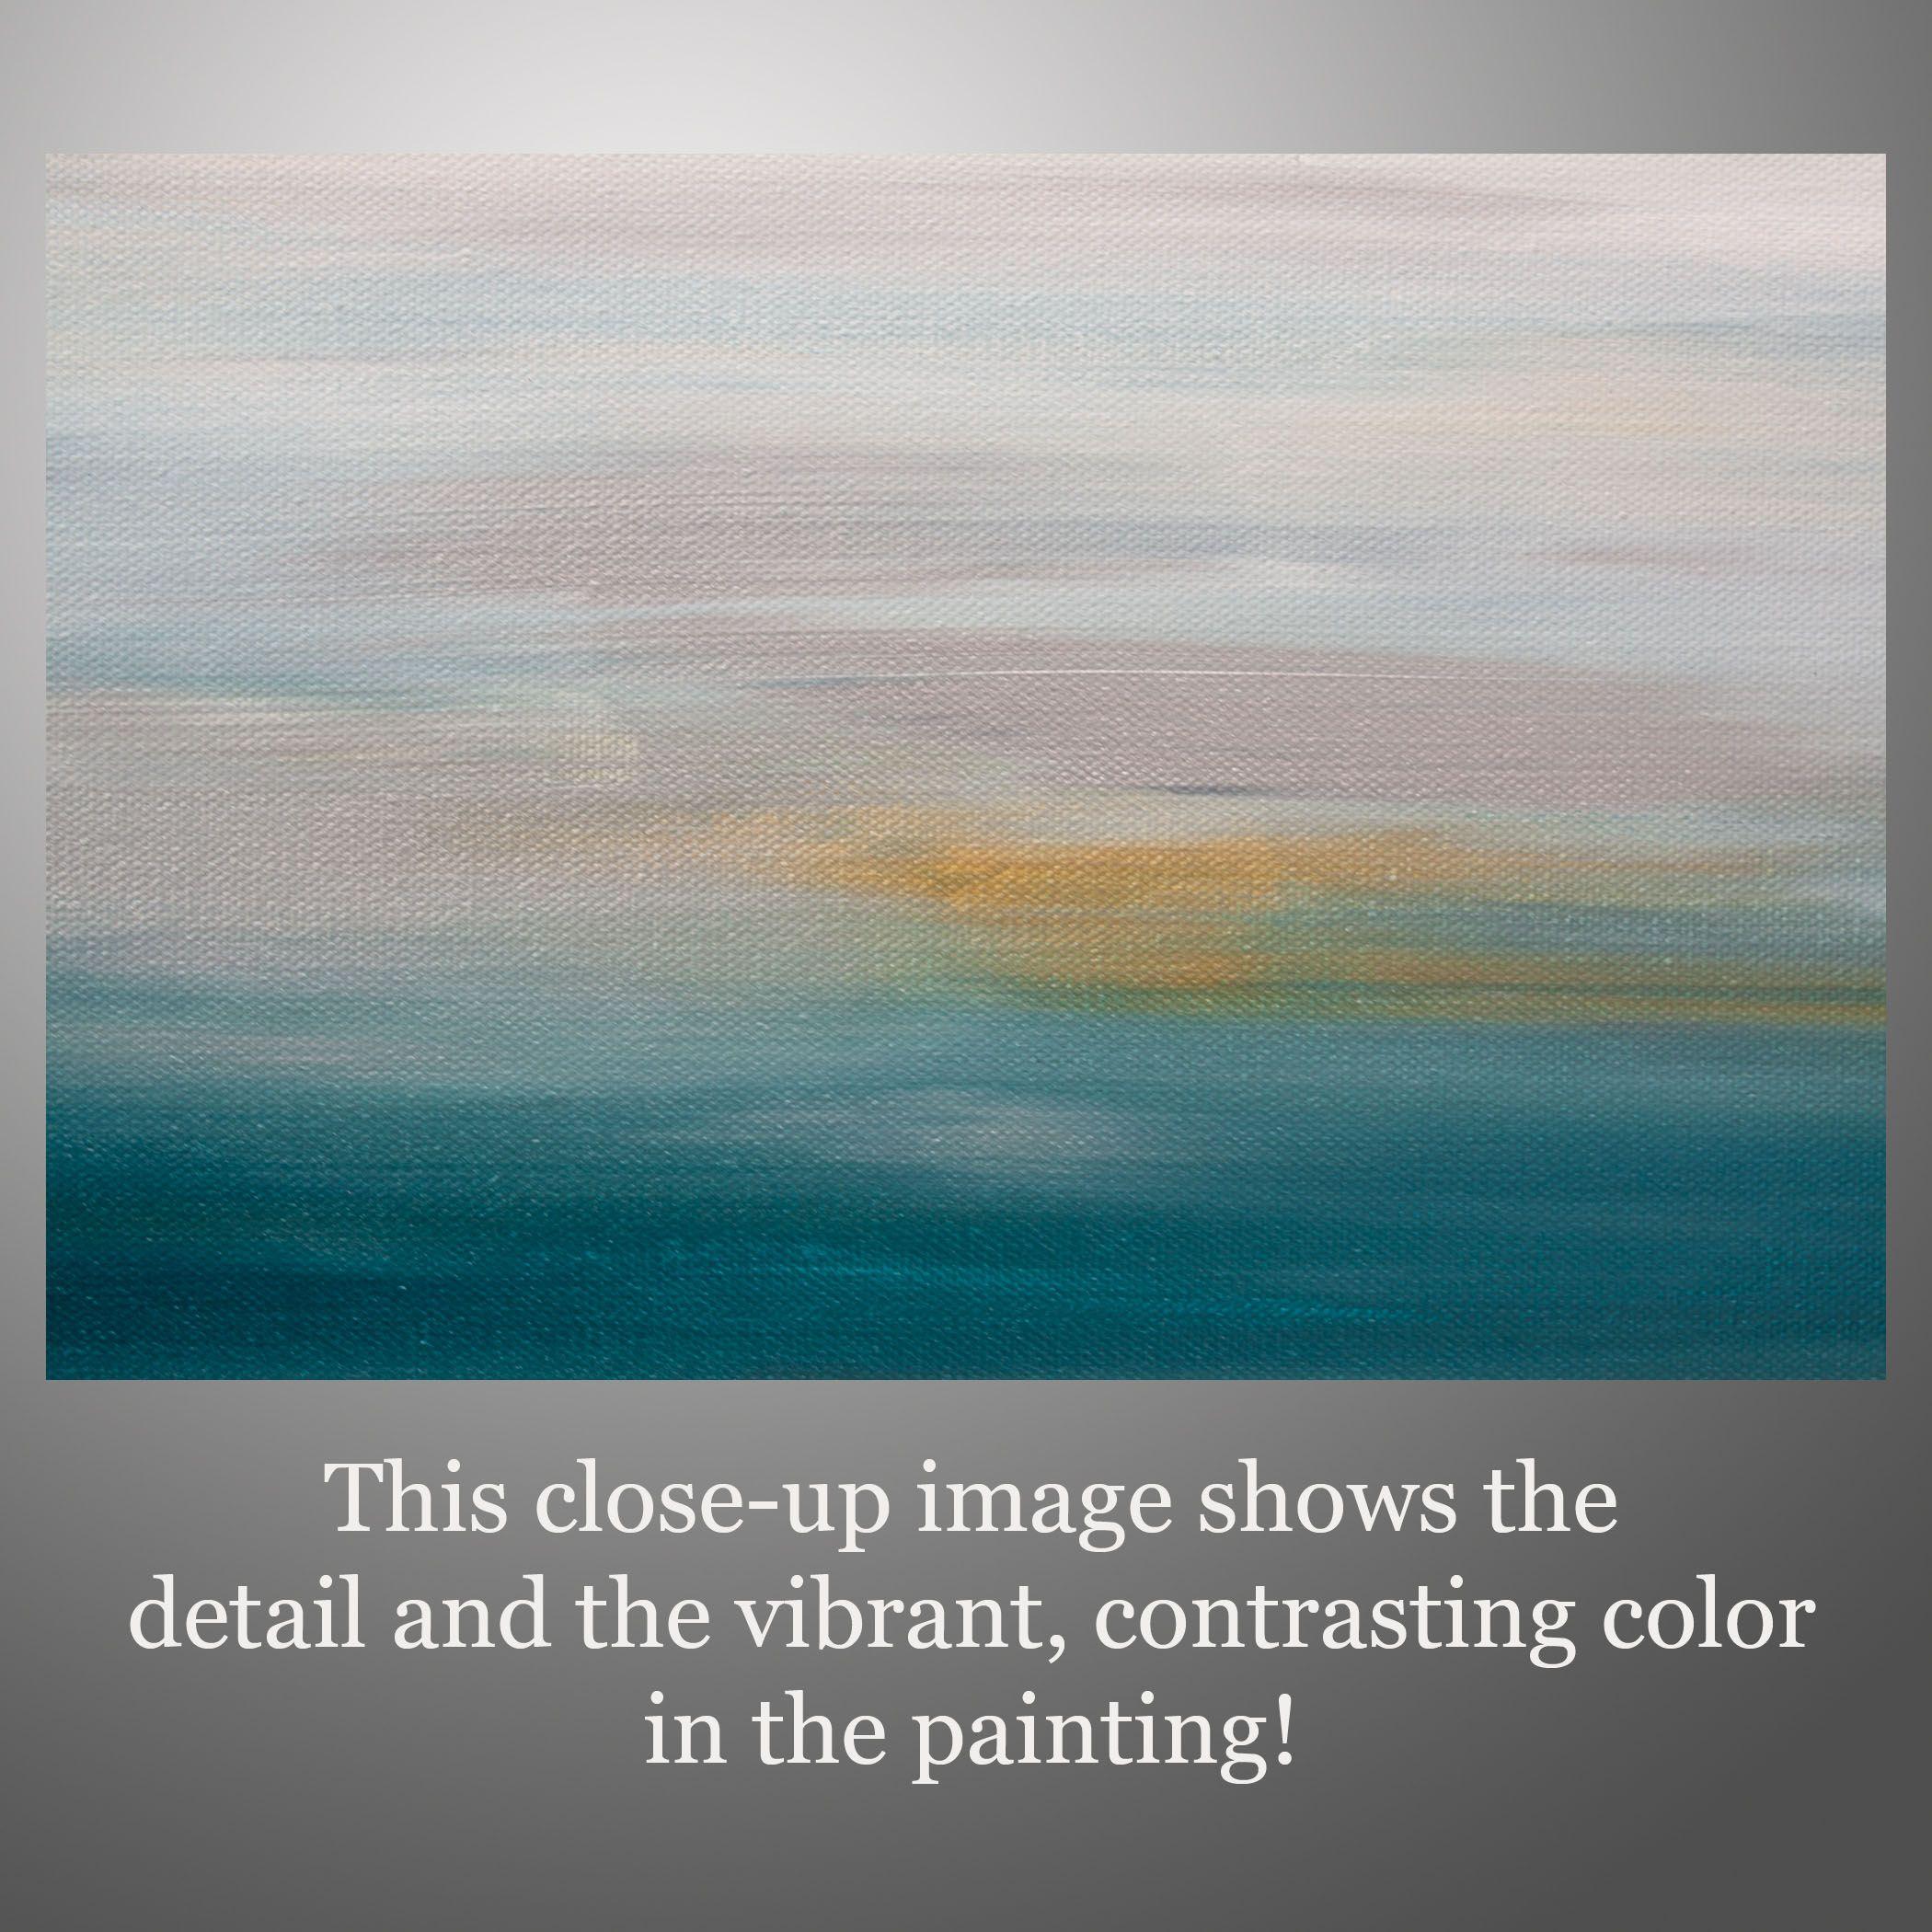 Sunset 65 est une peinture originale, créée avec de la peinture acrylique sur une toile emballée pour la galerie. Il a une largeur de 20 pouces, une hauteur de 20 pouces et une profondeur de 1,5 pouce (20x20x1,5).     Les couleurs utilisées dans le